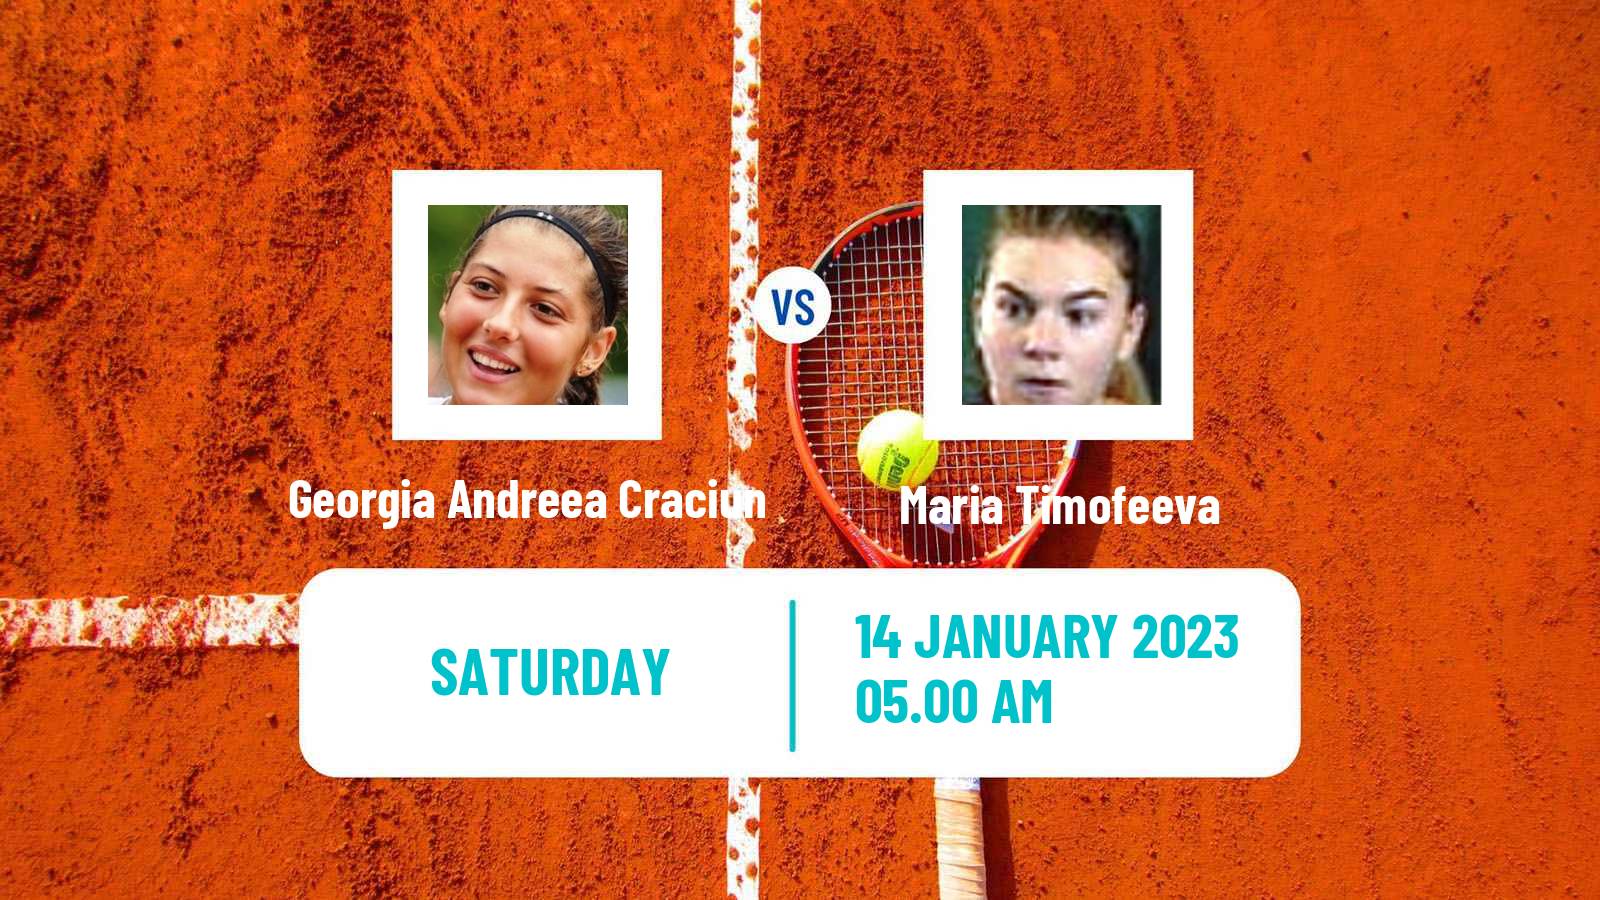 Tennis ITF Tournaments Georgia Andreea Craciun - Maria Timofeeva